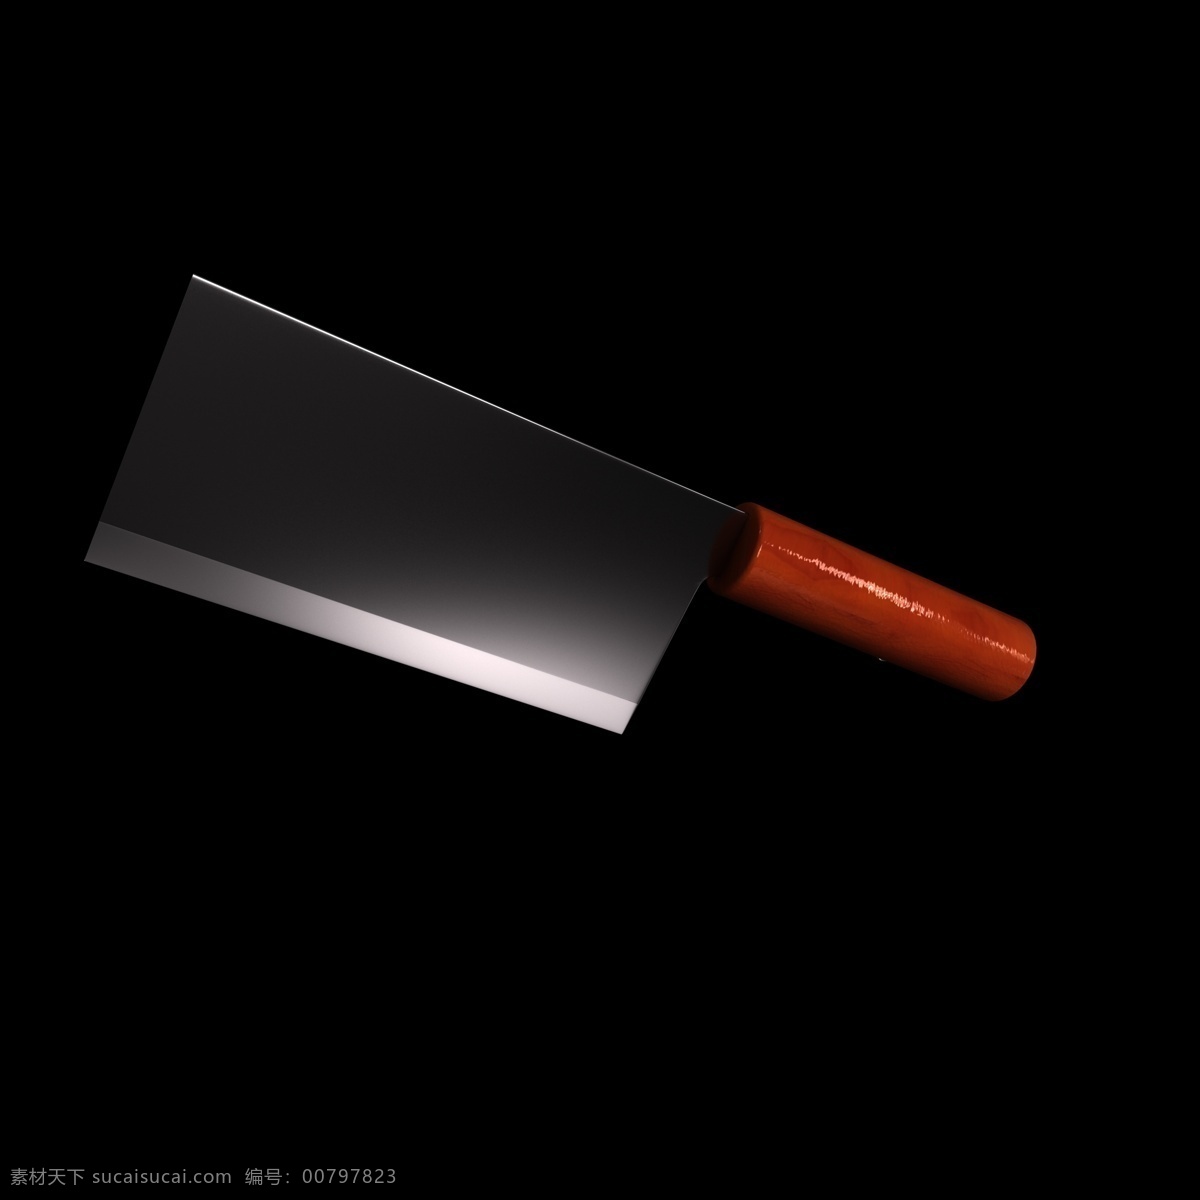 橙色 大刀 立体 装饰 厨房用具 厨房用品 创意刀具 不锈钢 钢制刀具 刀型设计插图 c4d